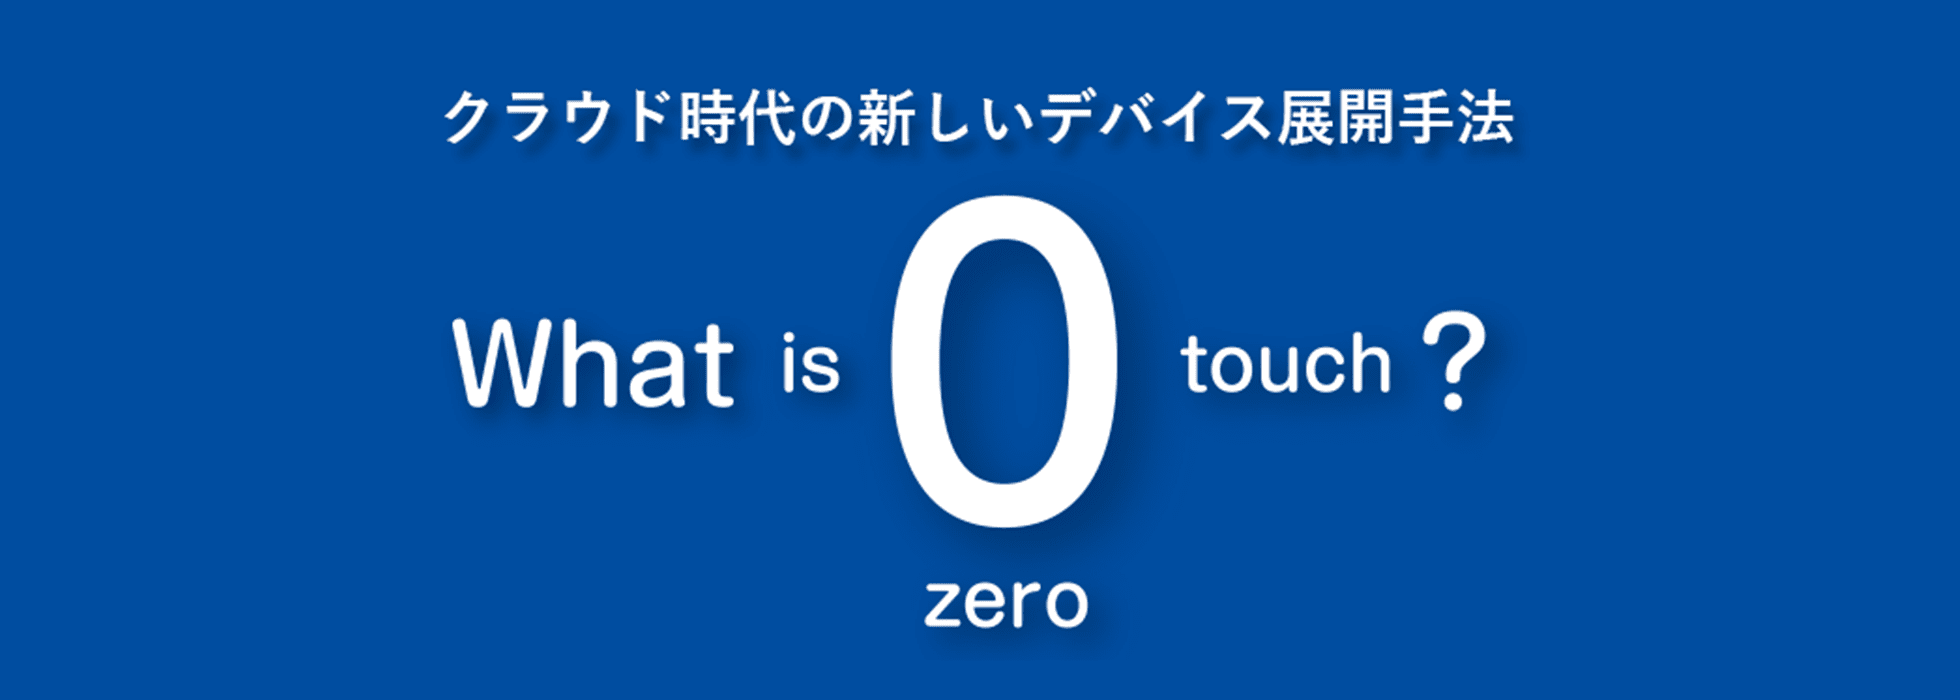 クラウド時代の新しいデバイス展開手法 -What is zero touch?-